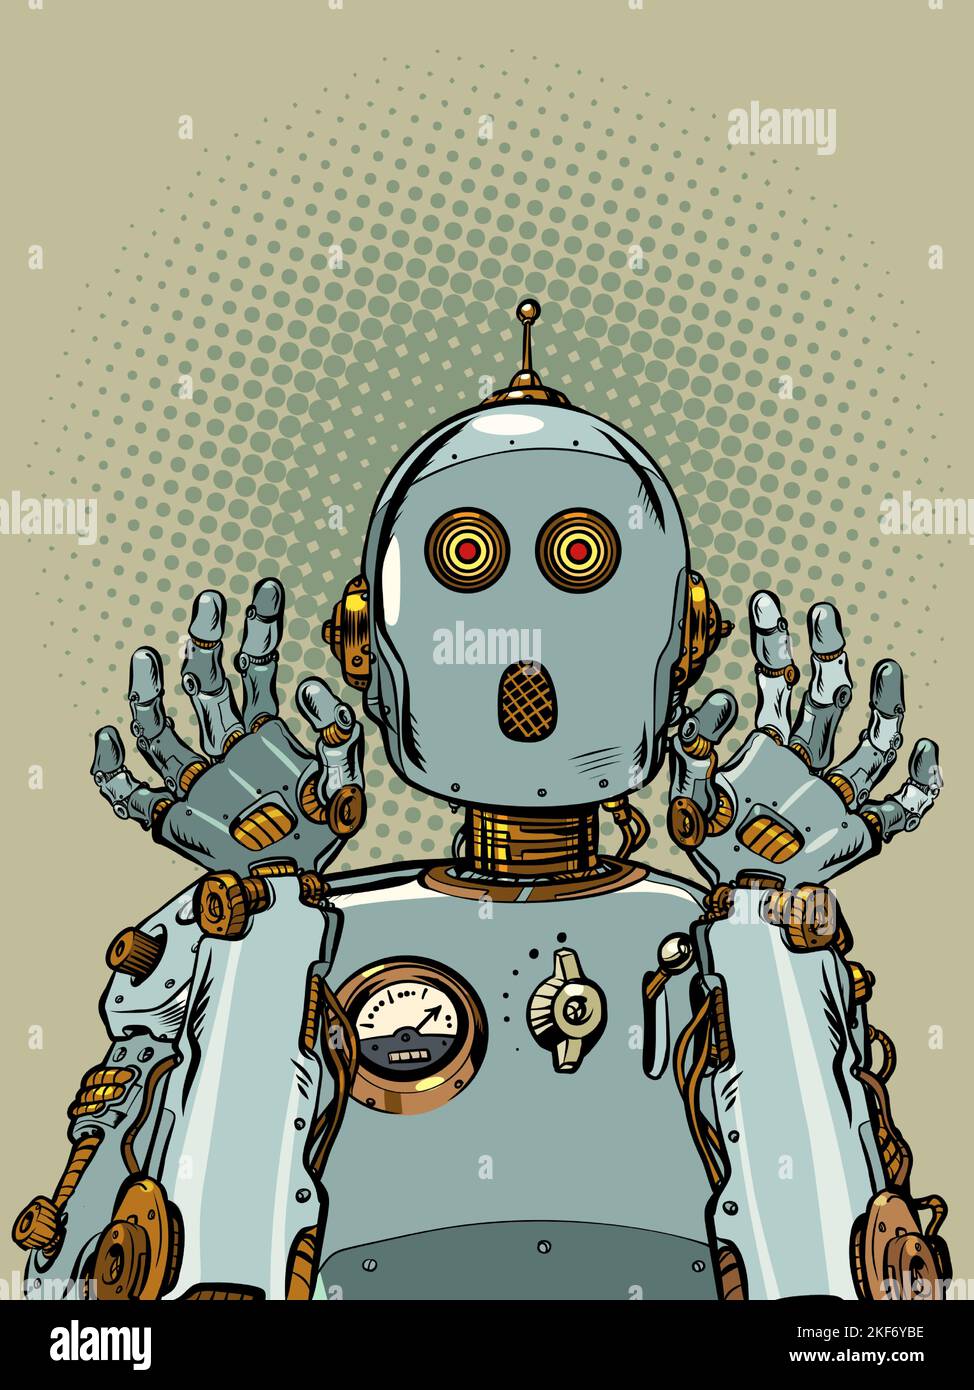 Der verängstigte Roboter hob überraschend die Hände. Emotionen der künstlichen Intelligenz. Retro-Mechanismus Stock Vektor